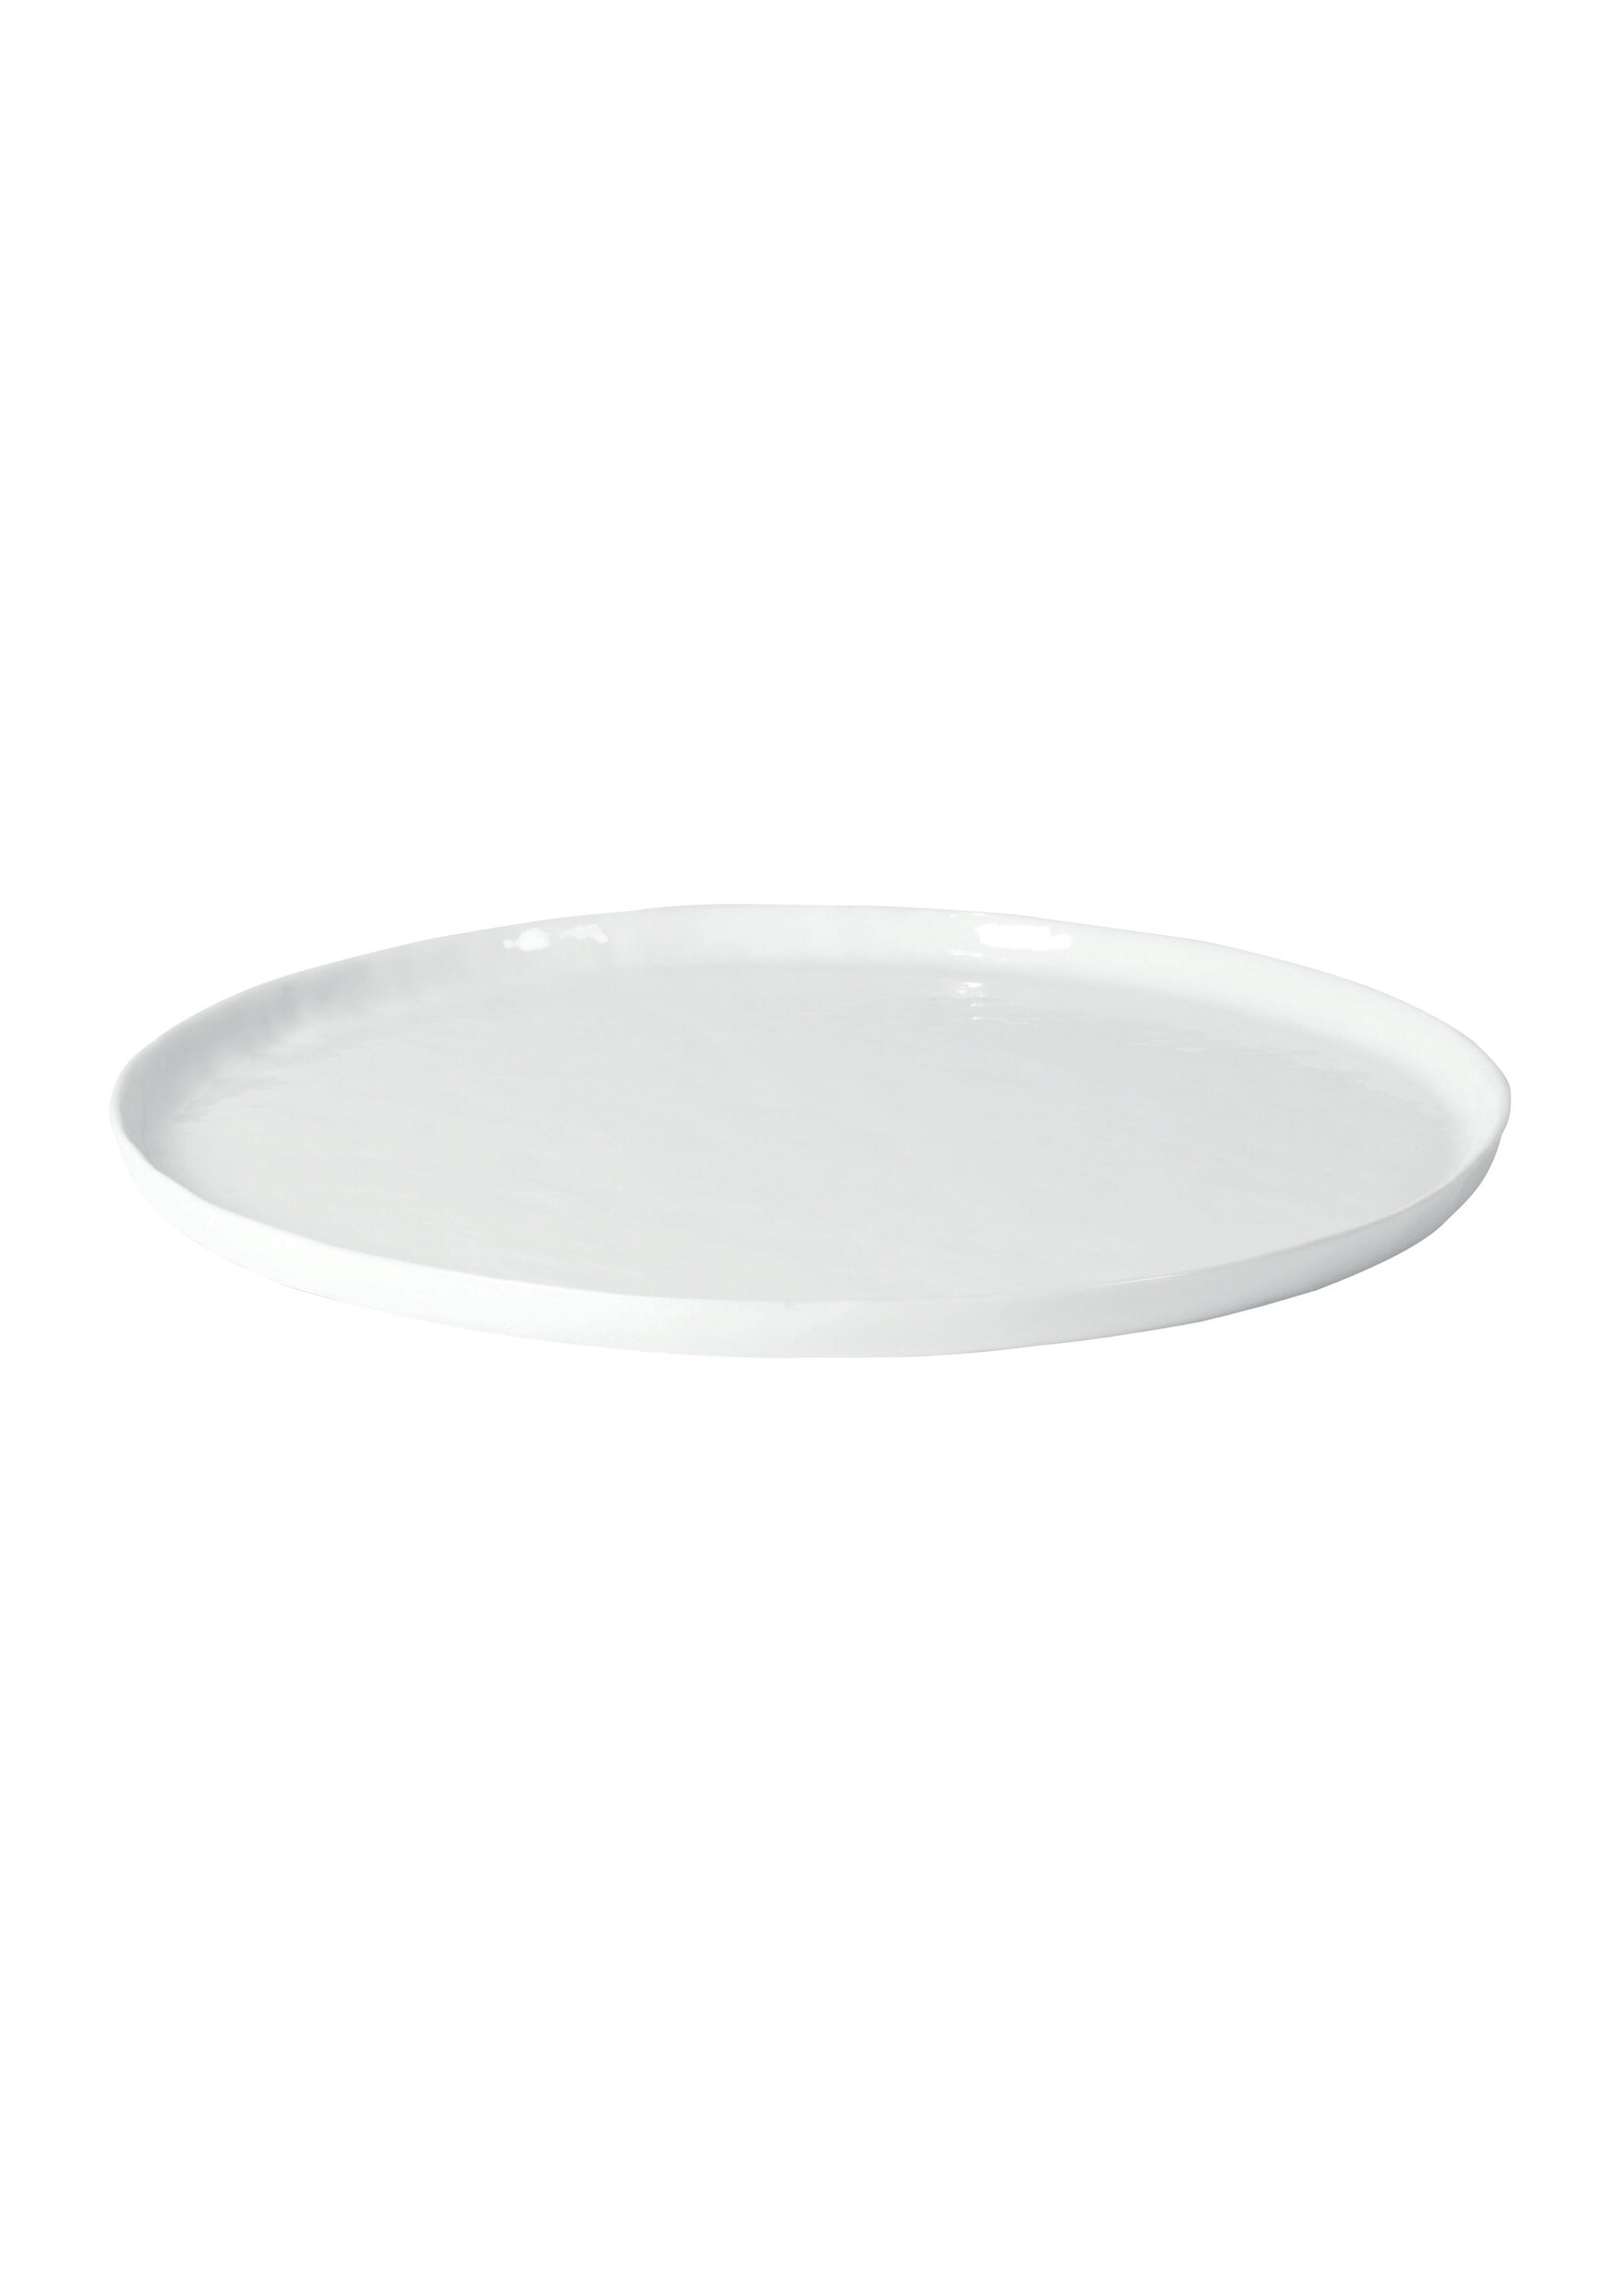 Pomax Porcelino White Assiette de Présentation 31,5 cm